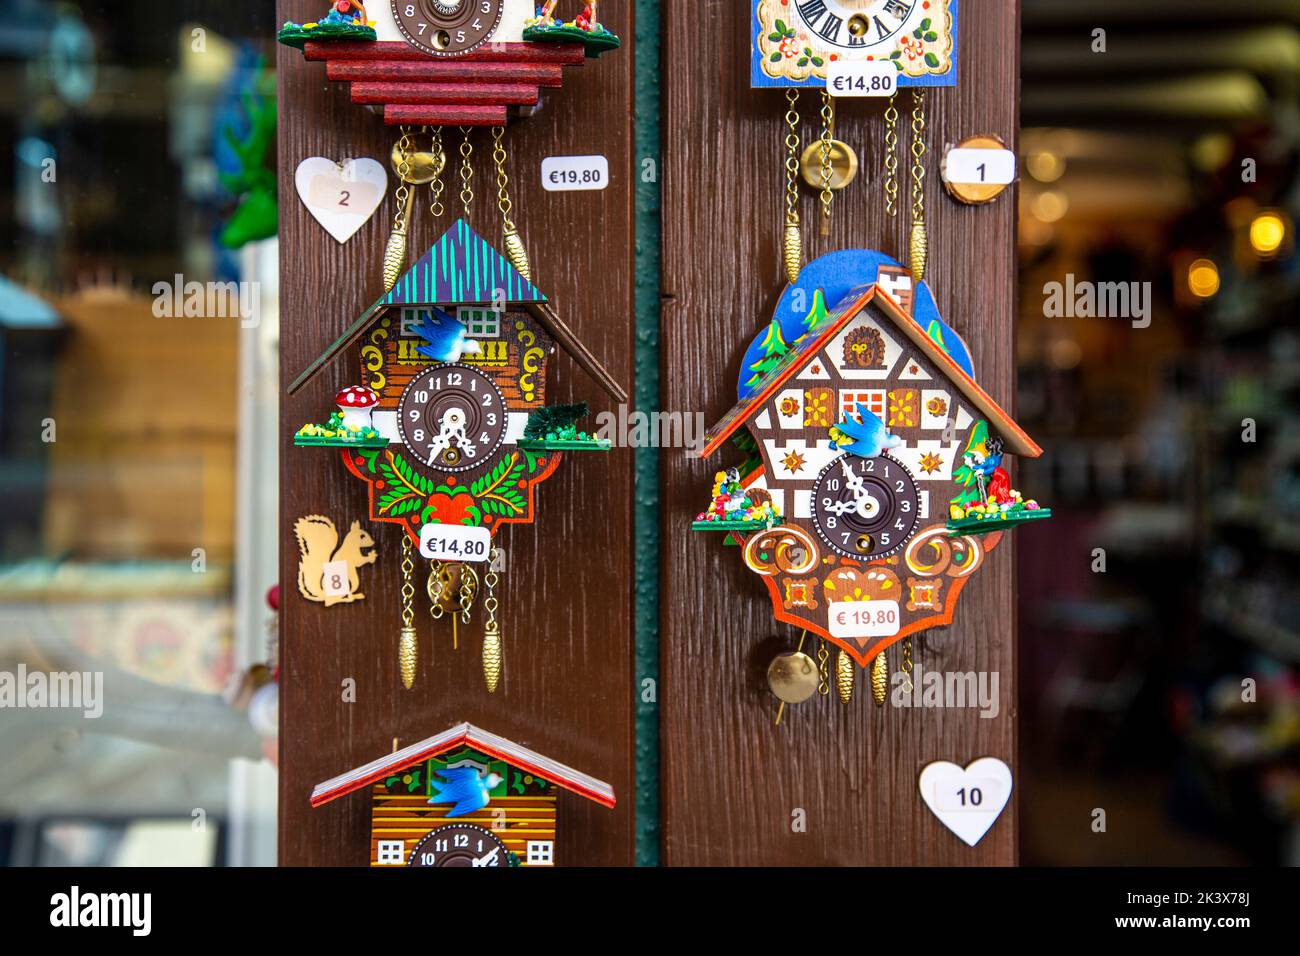 Relojes de cuco estilo chalet en una tienda de recuerdos en Friburgo de Brisgovia, Alemania Foto de stock